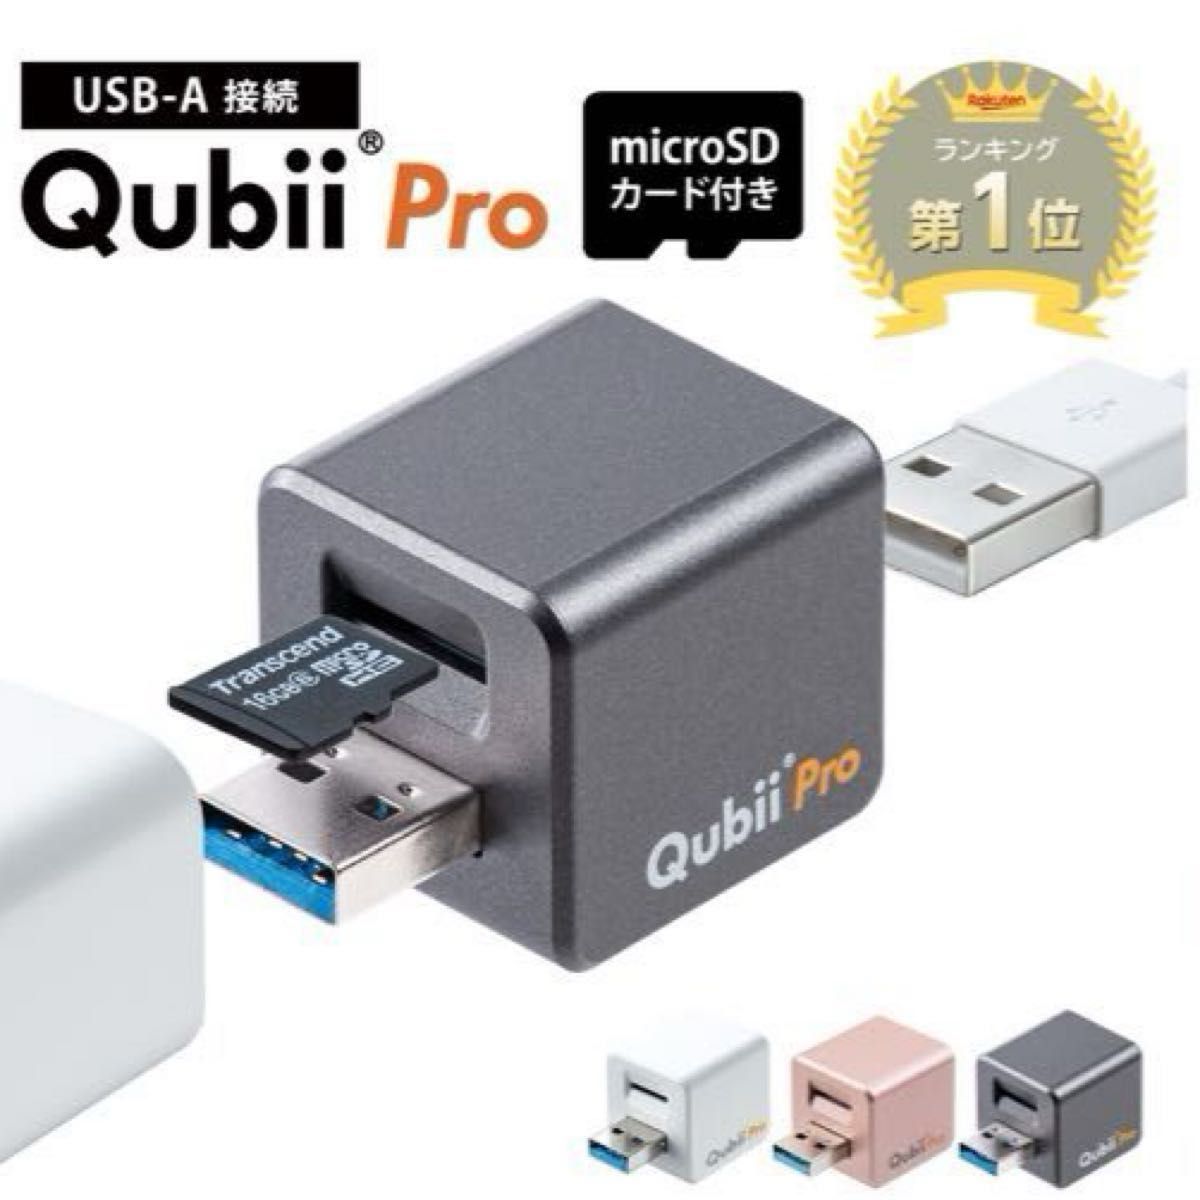 【microSDカード256GB付き】Qubii Pro